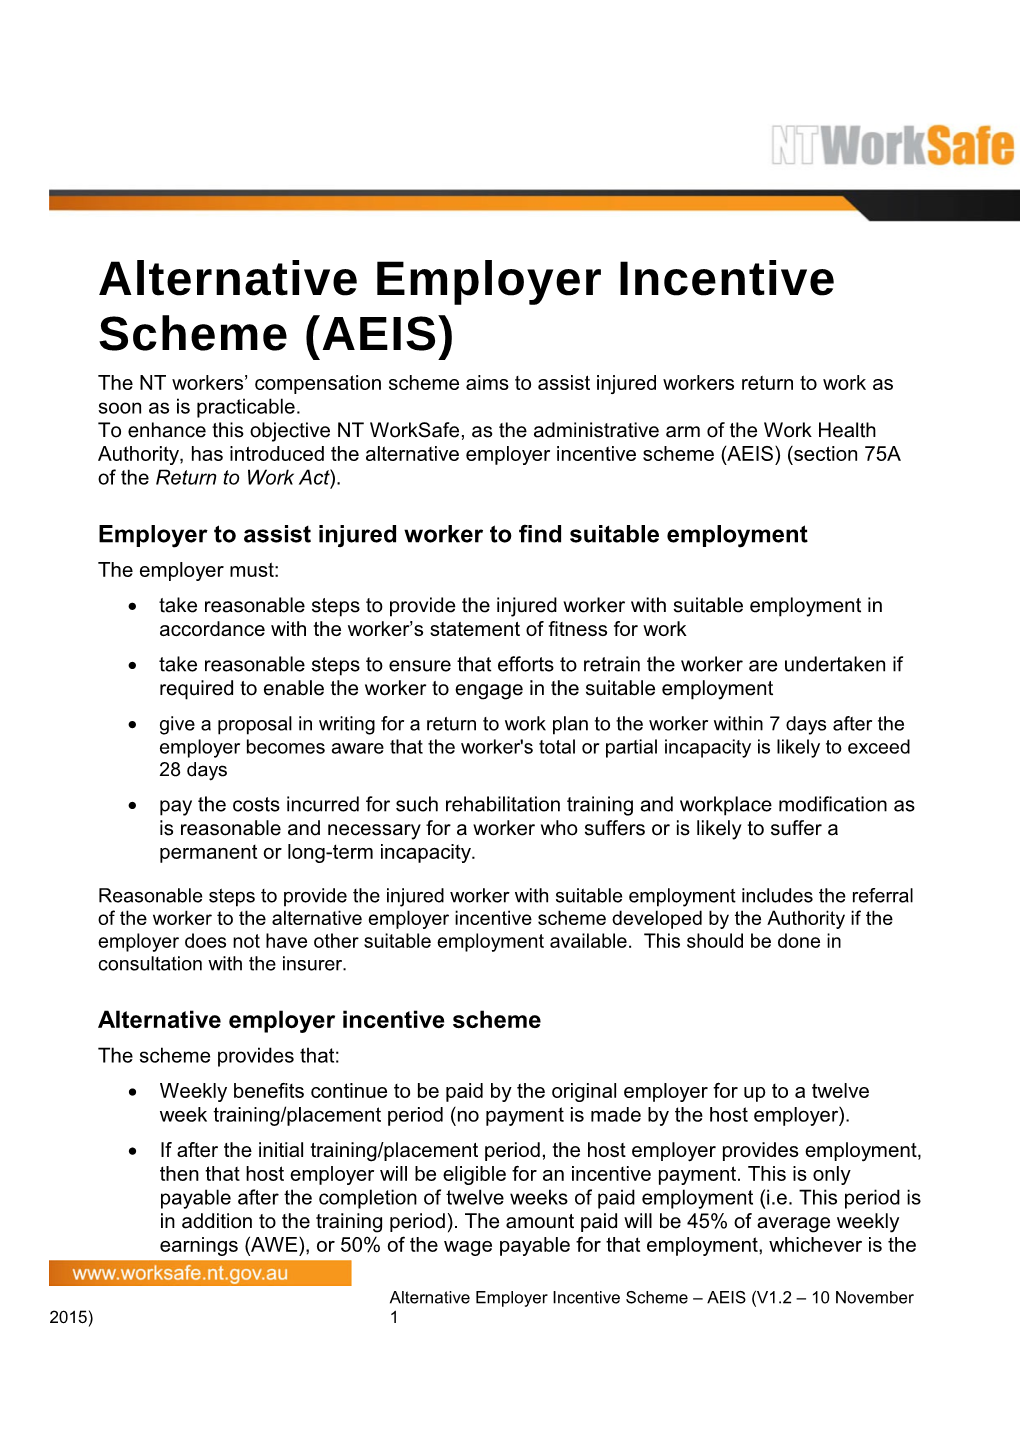 Alternative Employer Incentive Scheme